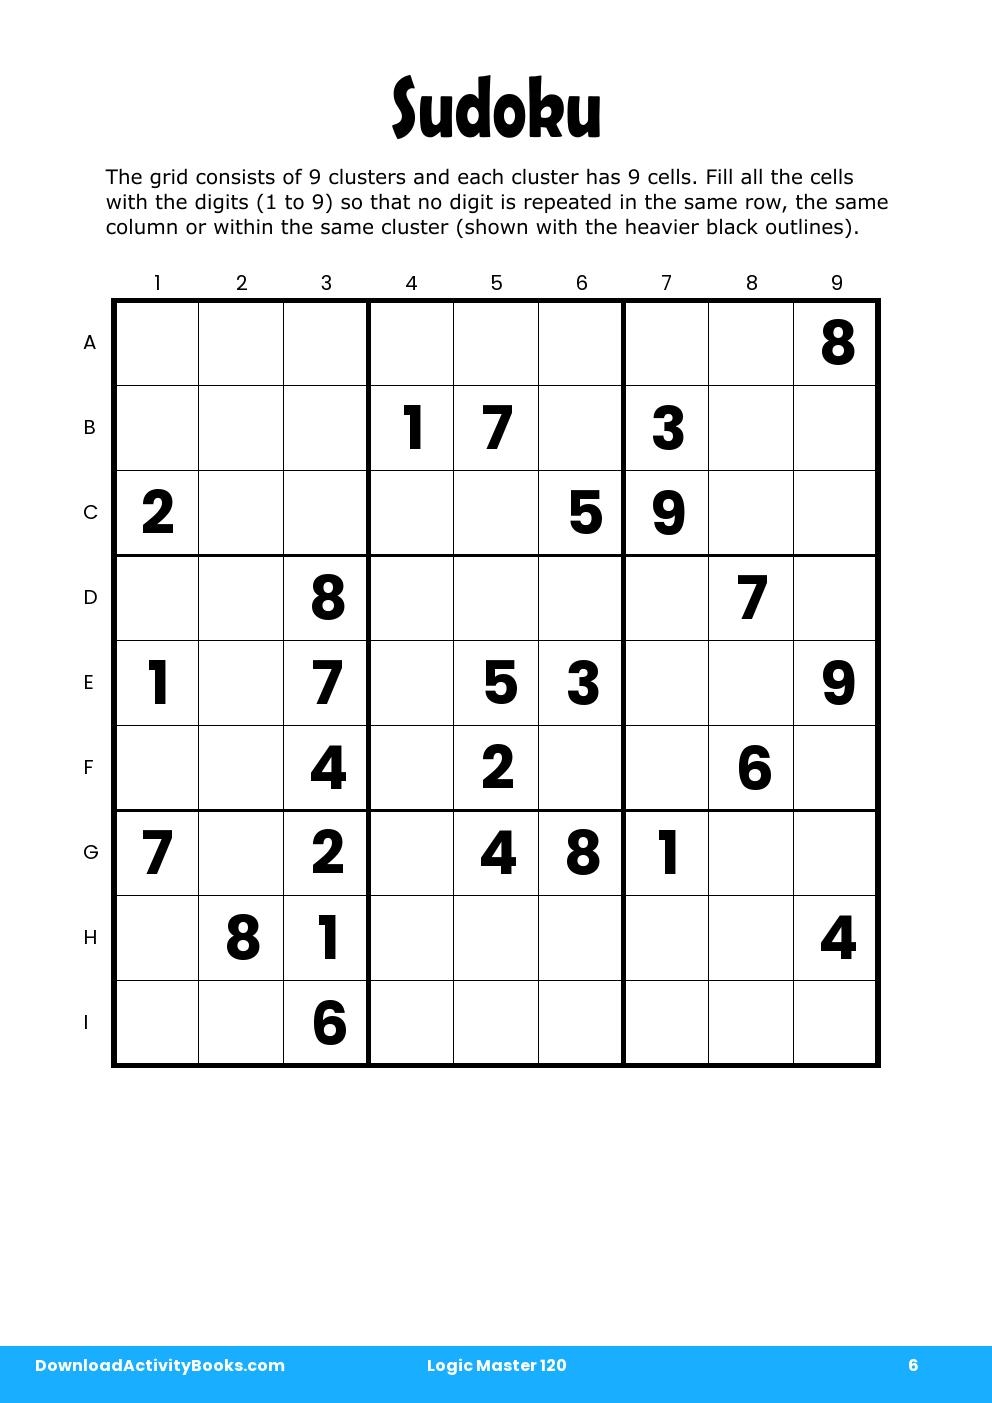 Sudoku in Logic Master 120